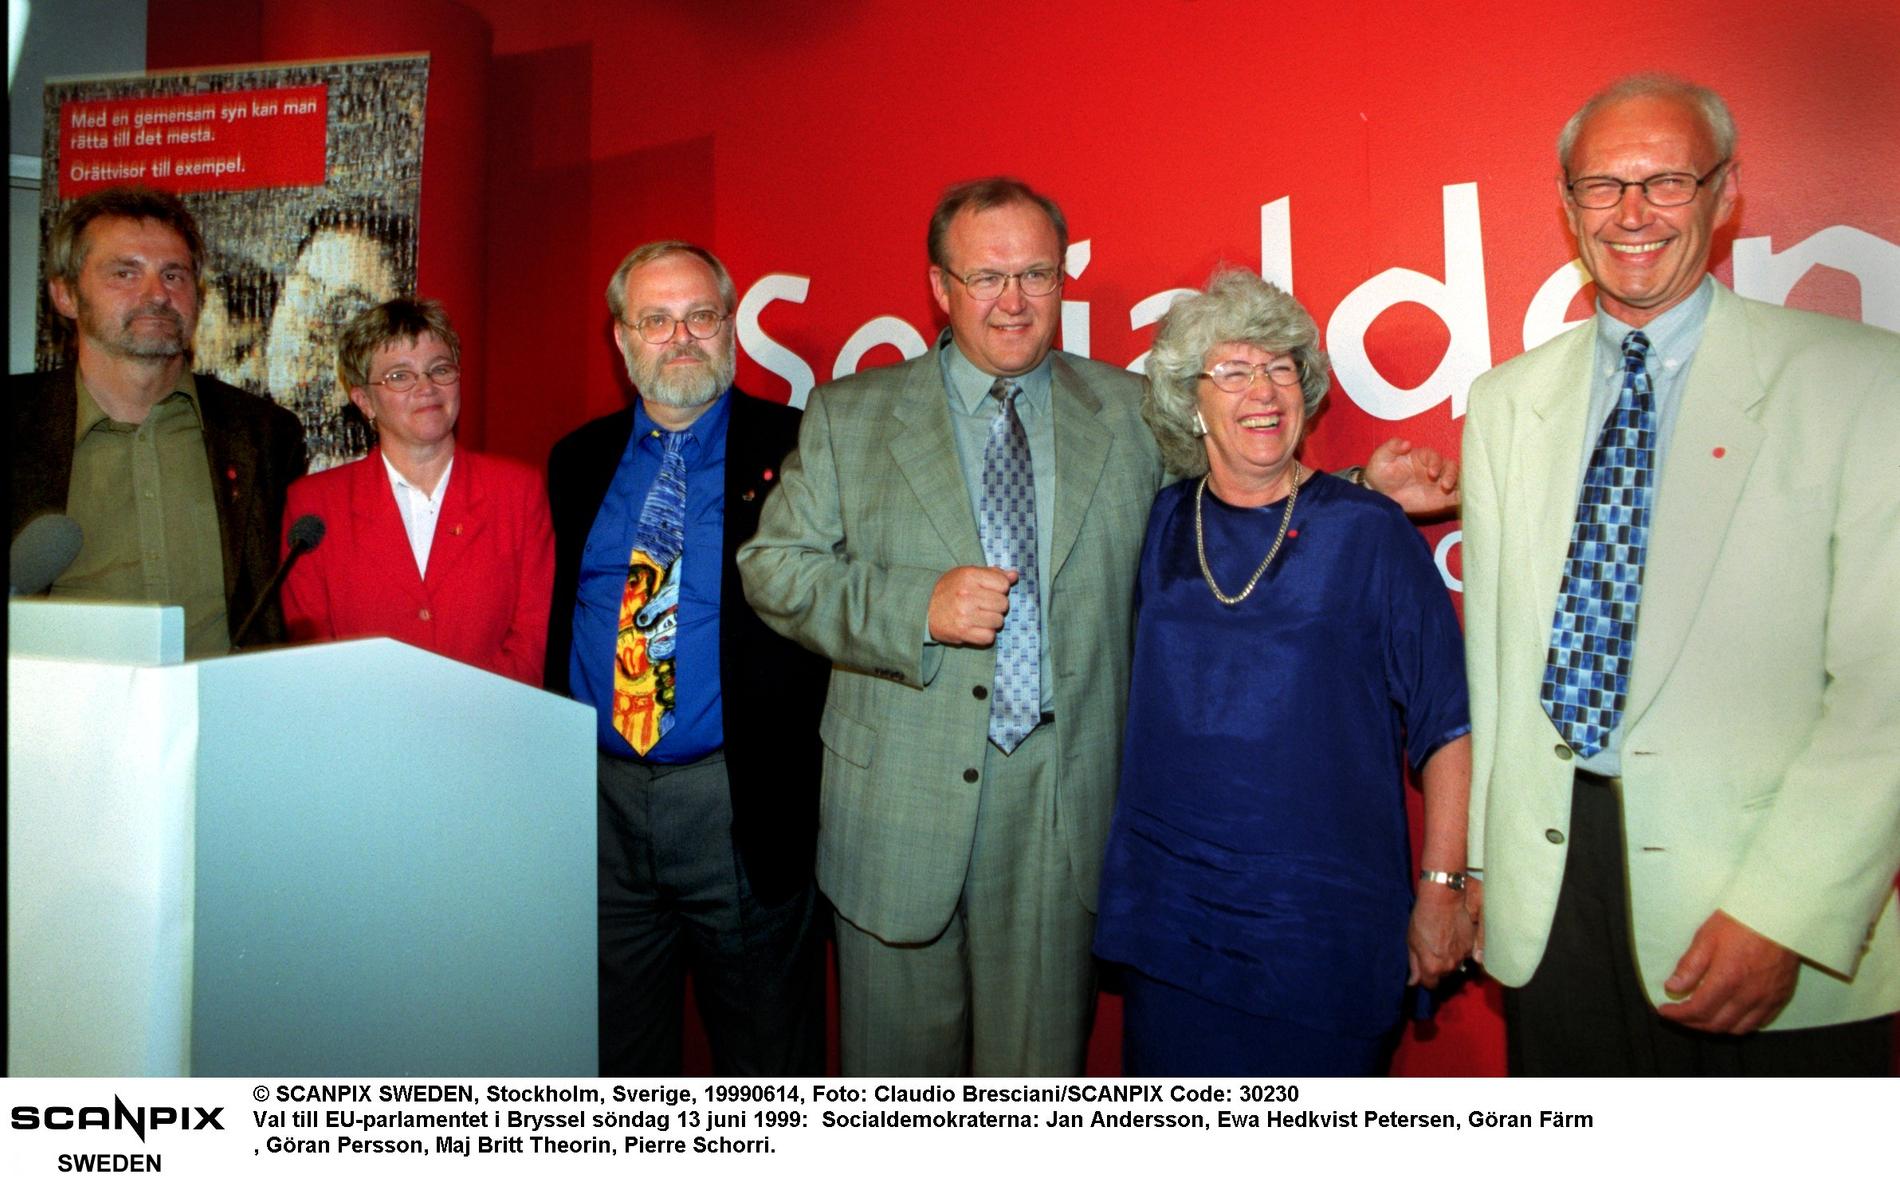 Val till EU-parlamentet i Bryssel söndag 13 juni 1999: Socialdemokraterna: Jan Andersson, Ewa Hedkvist Petersen, Göran Färm, Göran Persson, Maj Britt Theorin och Pierre Schori.